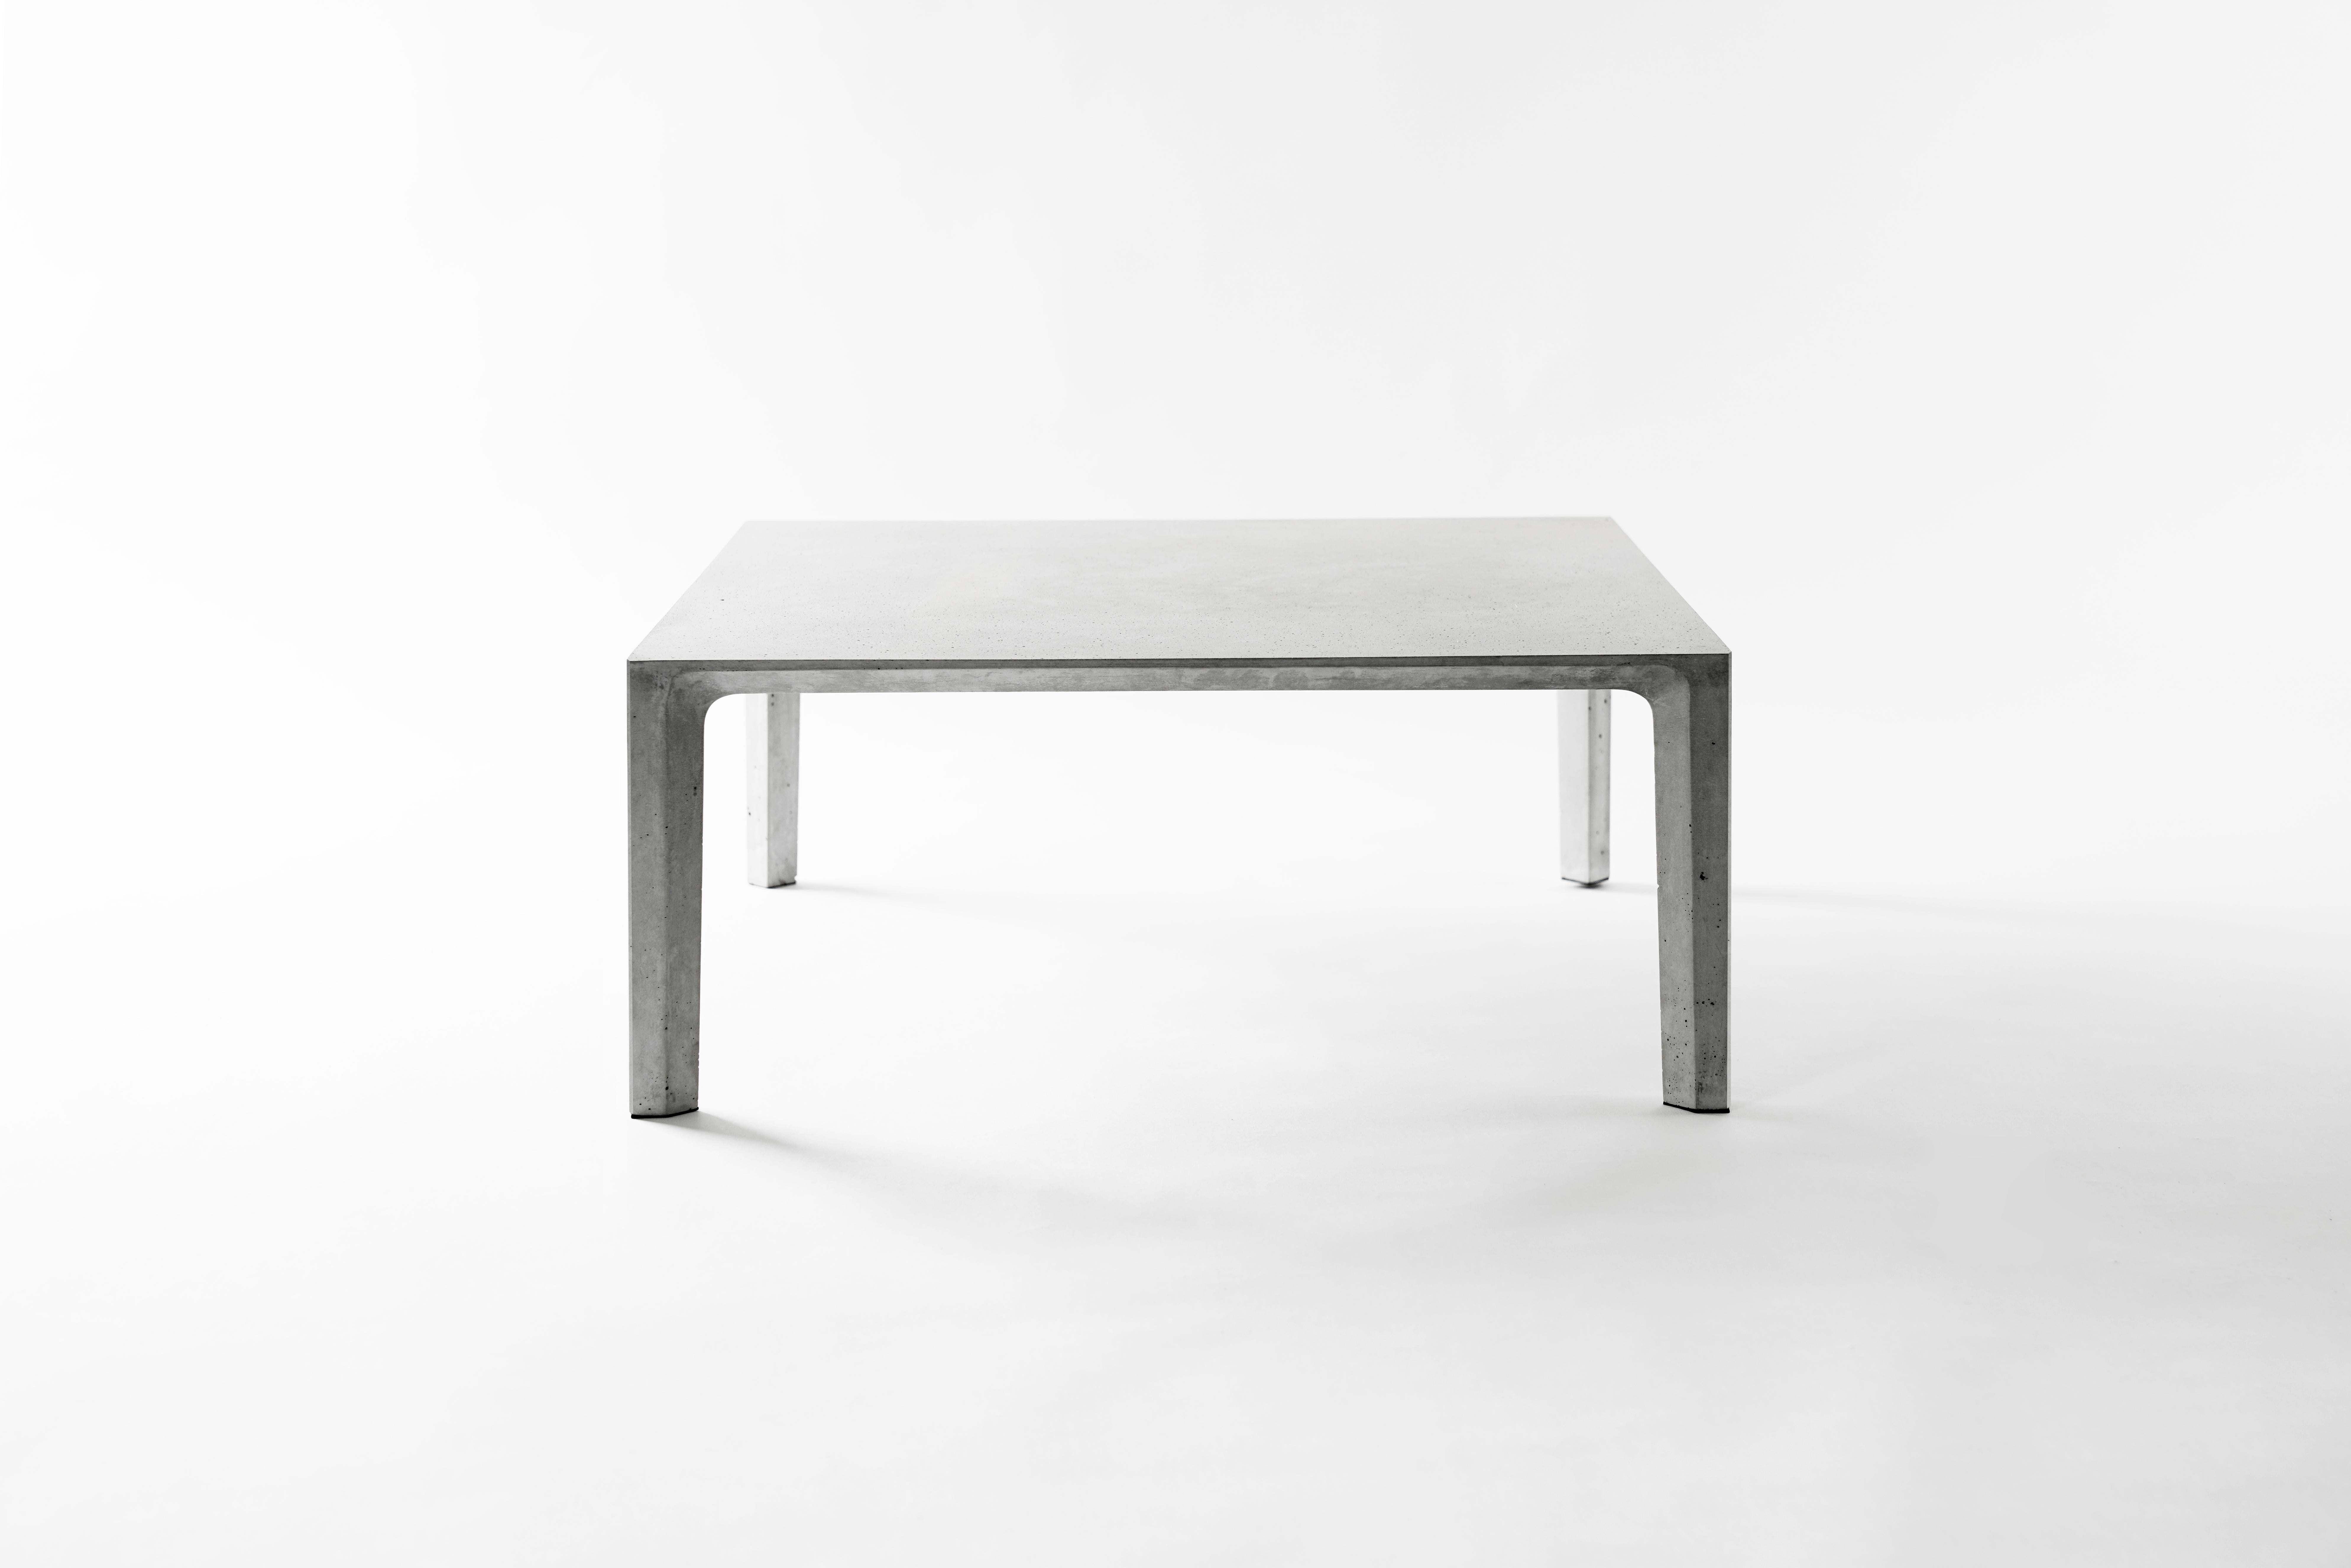 Table d'appoint JIONG de Bentu Design

Béton
600×600×250 mm
22 kg
Utilisation en extérieur : OK

Cette magnifique table d'appoint ou table basse est fabriquée en béton par le célèbre studio de design Bentu Design. La surface lisse et les